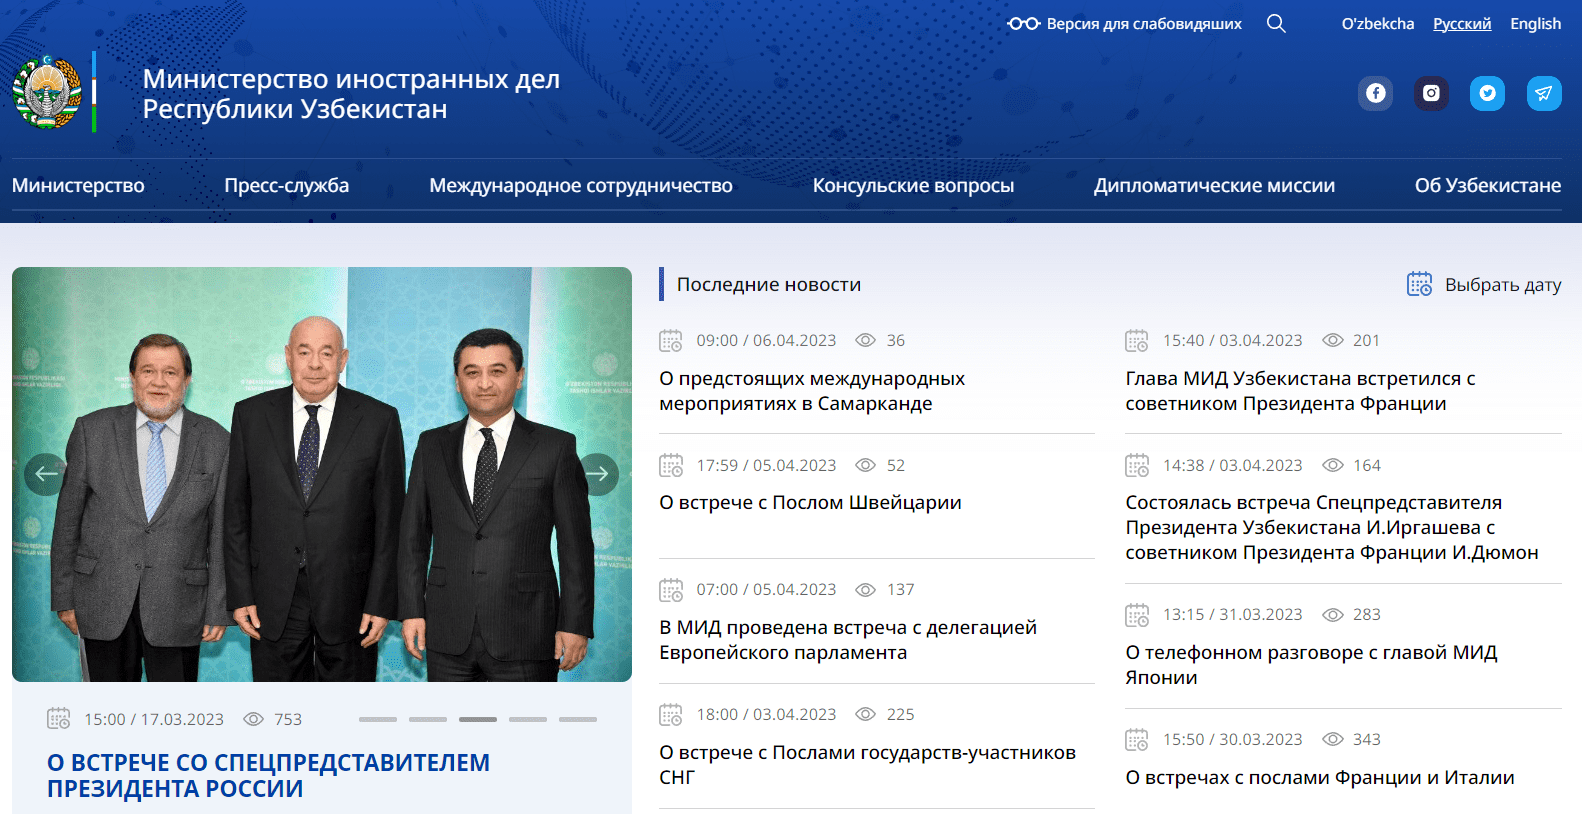 Министерства иностранных дел Республики Узбекистан (mfa.uz) - официальный сайт